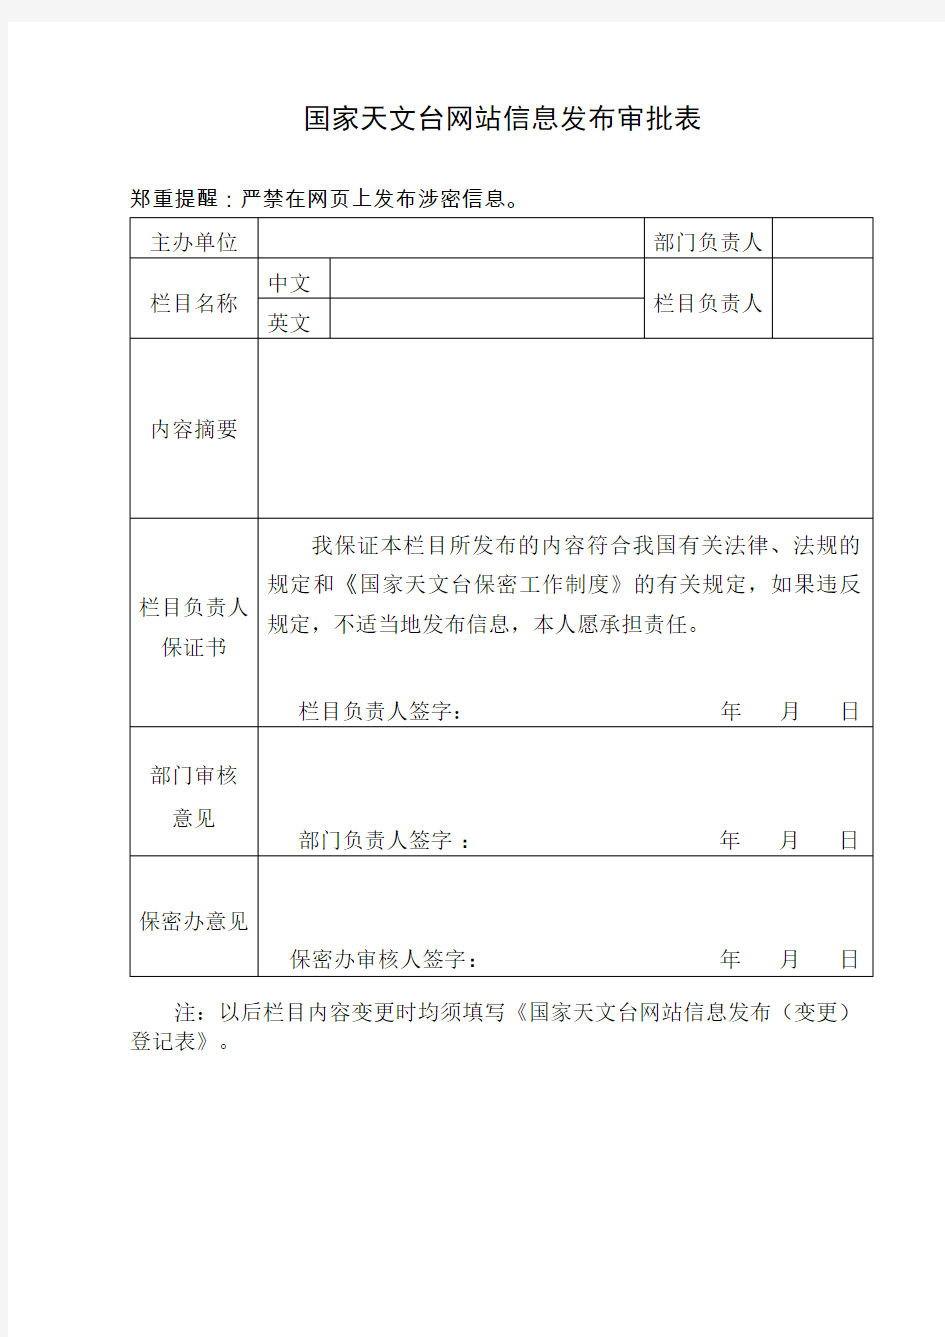 中国科学院邮件系统电子邮箱申请表.doc